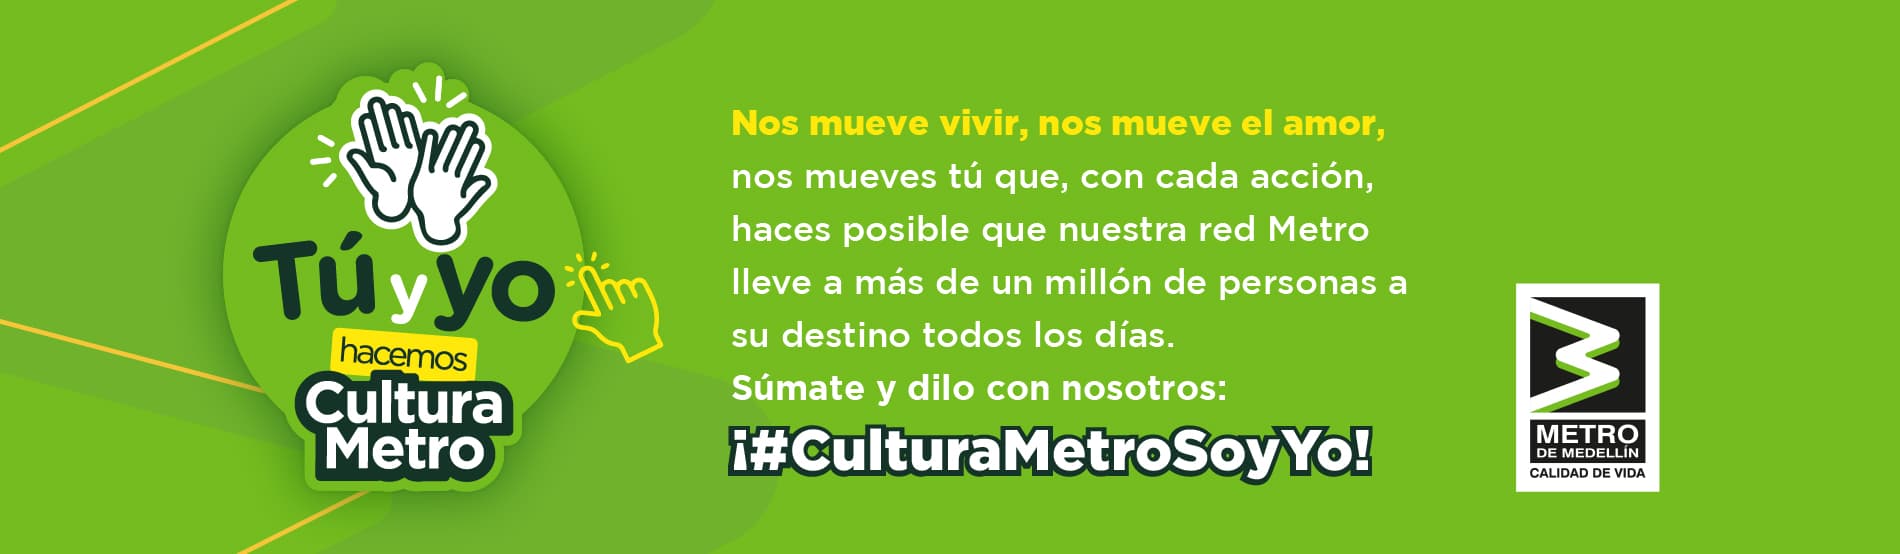 banner-web-tu-y-yo-hacemos-cultura-metro